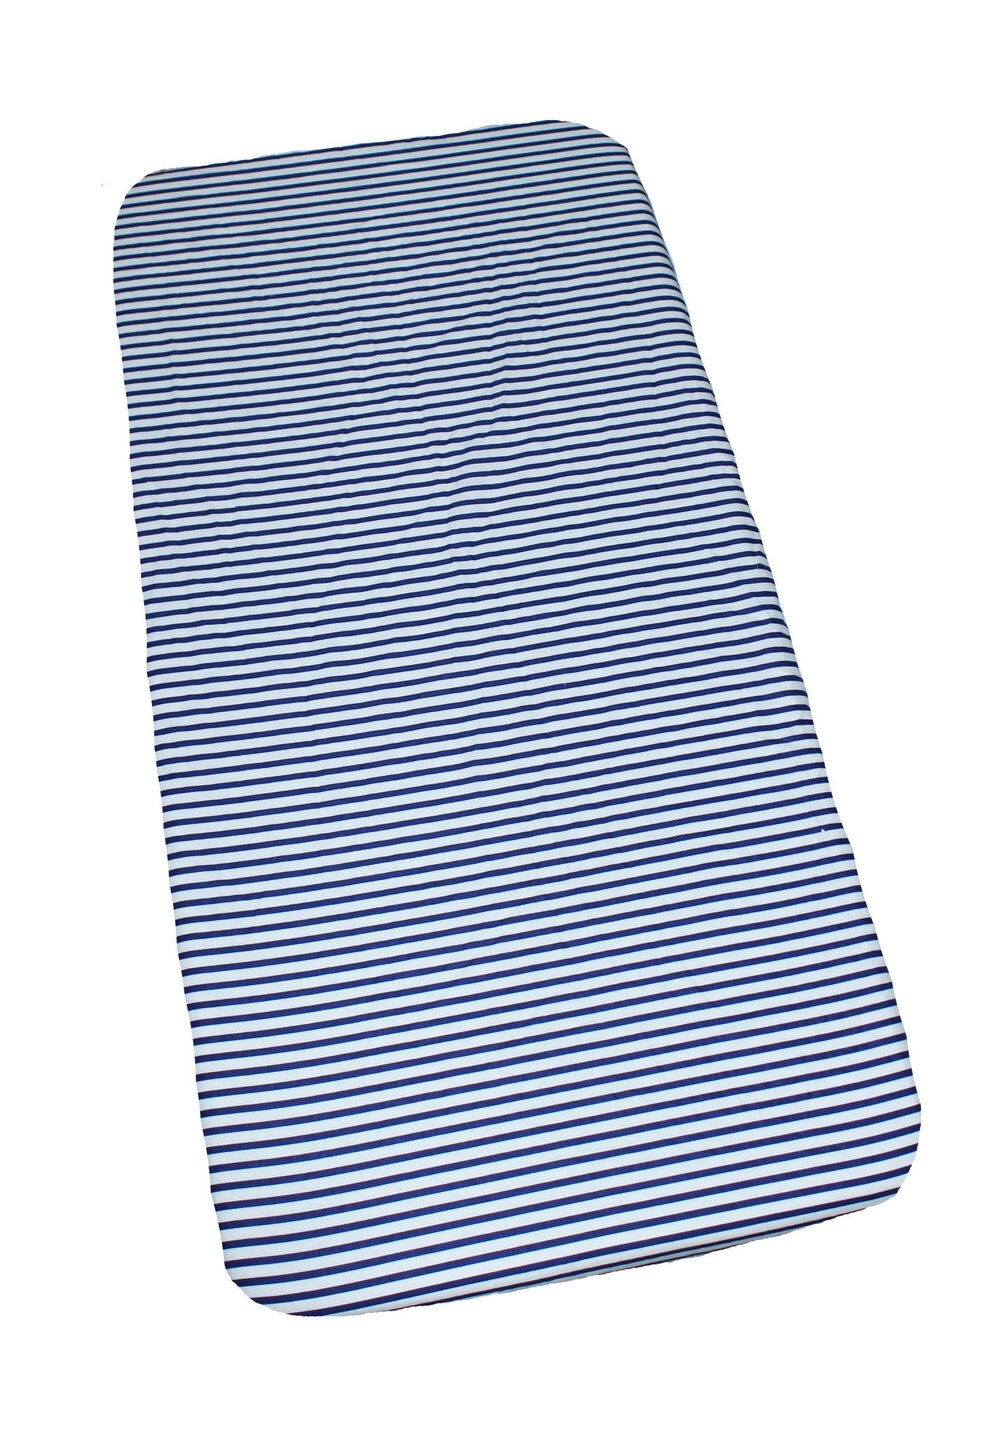 Cearceaf Prichindel, patut 120×60 cm, alb cu dungi bluemarin 120x60